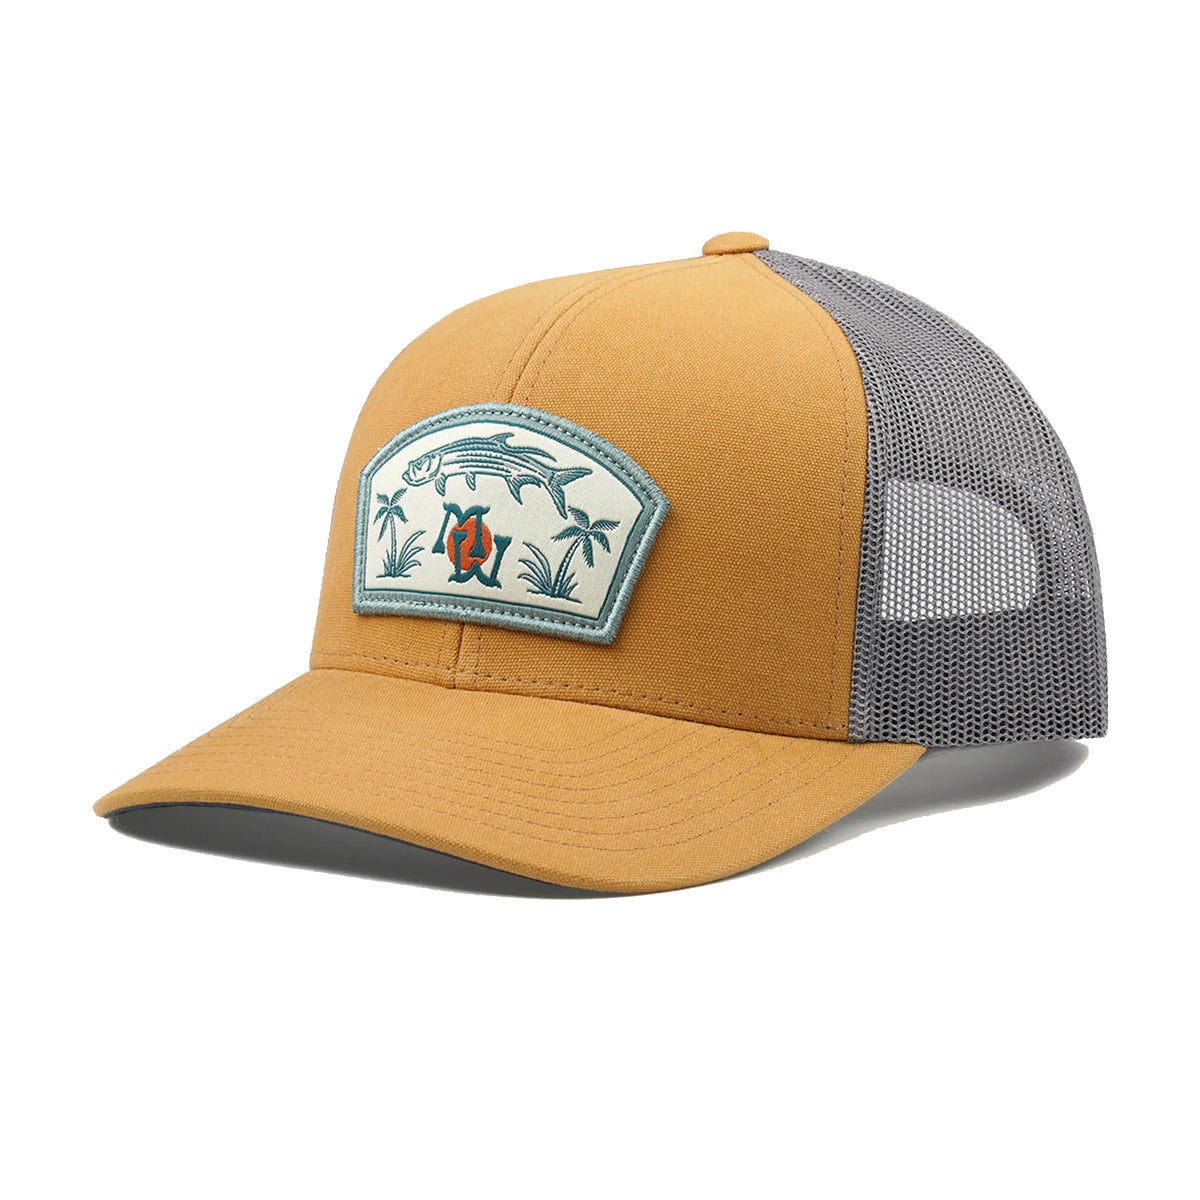 Marsh Wear Silver King Trucker Hat